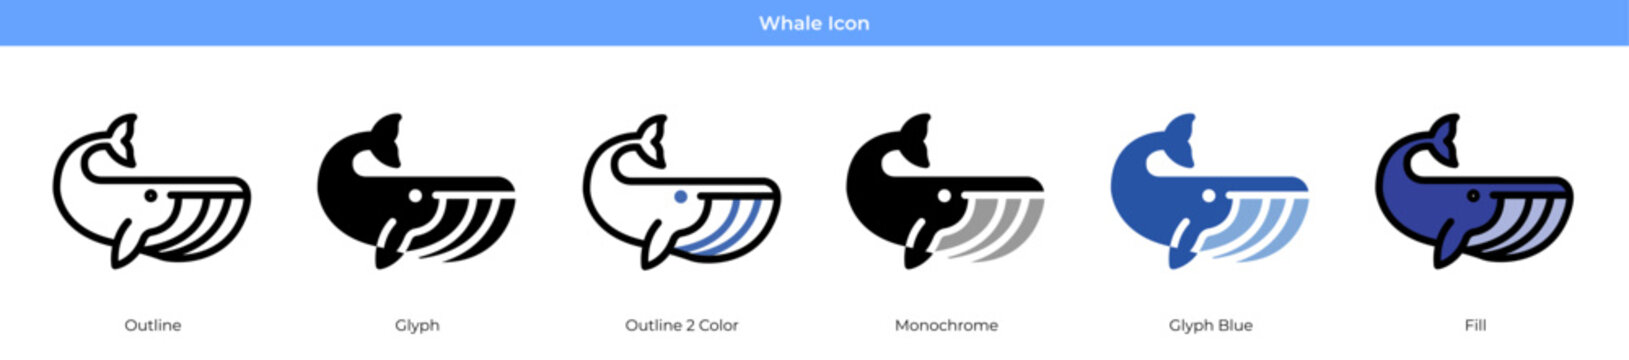 Whale Icon Set